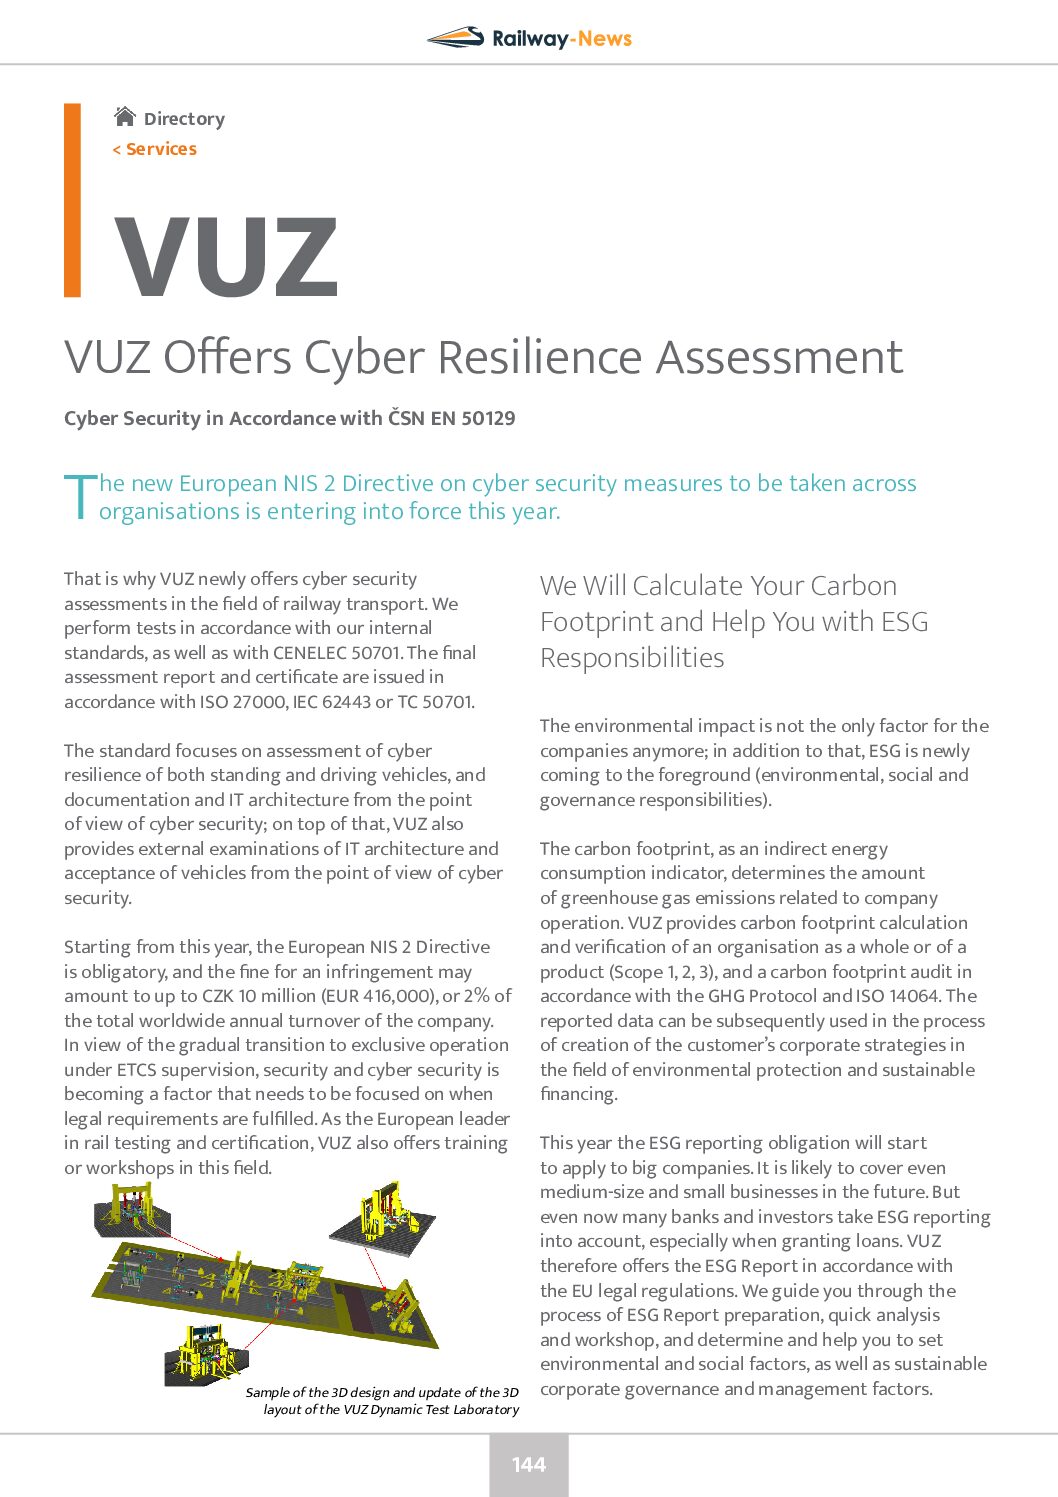 VUZ Offers Cyber Resilience Assessment